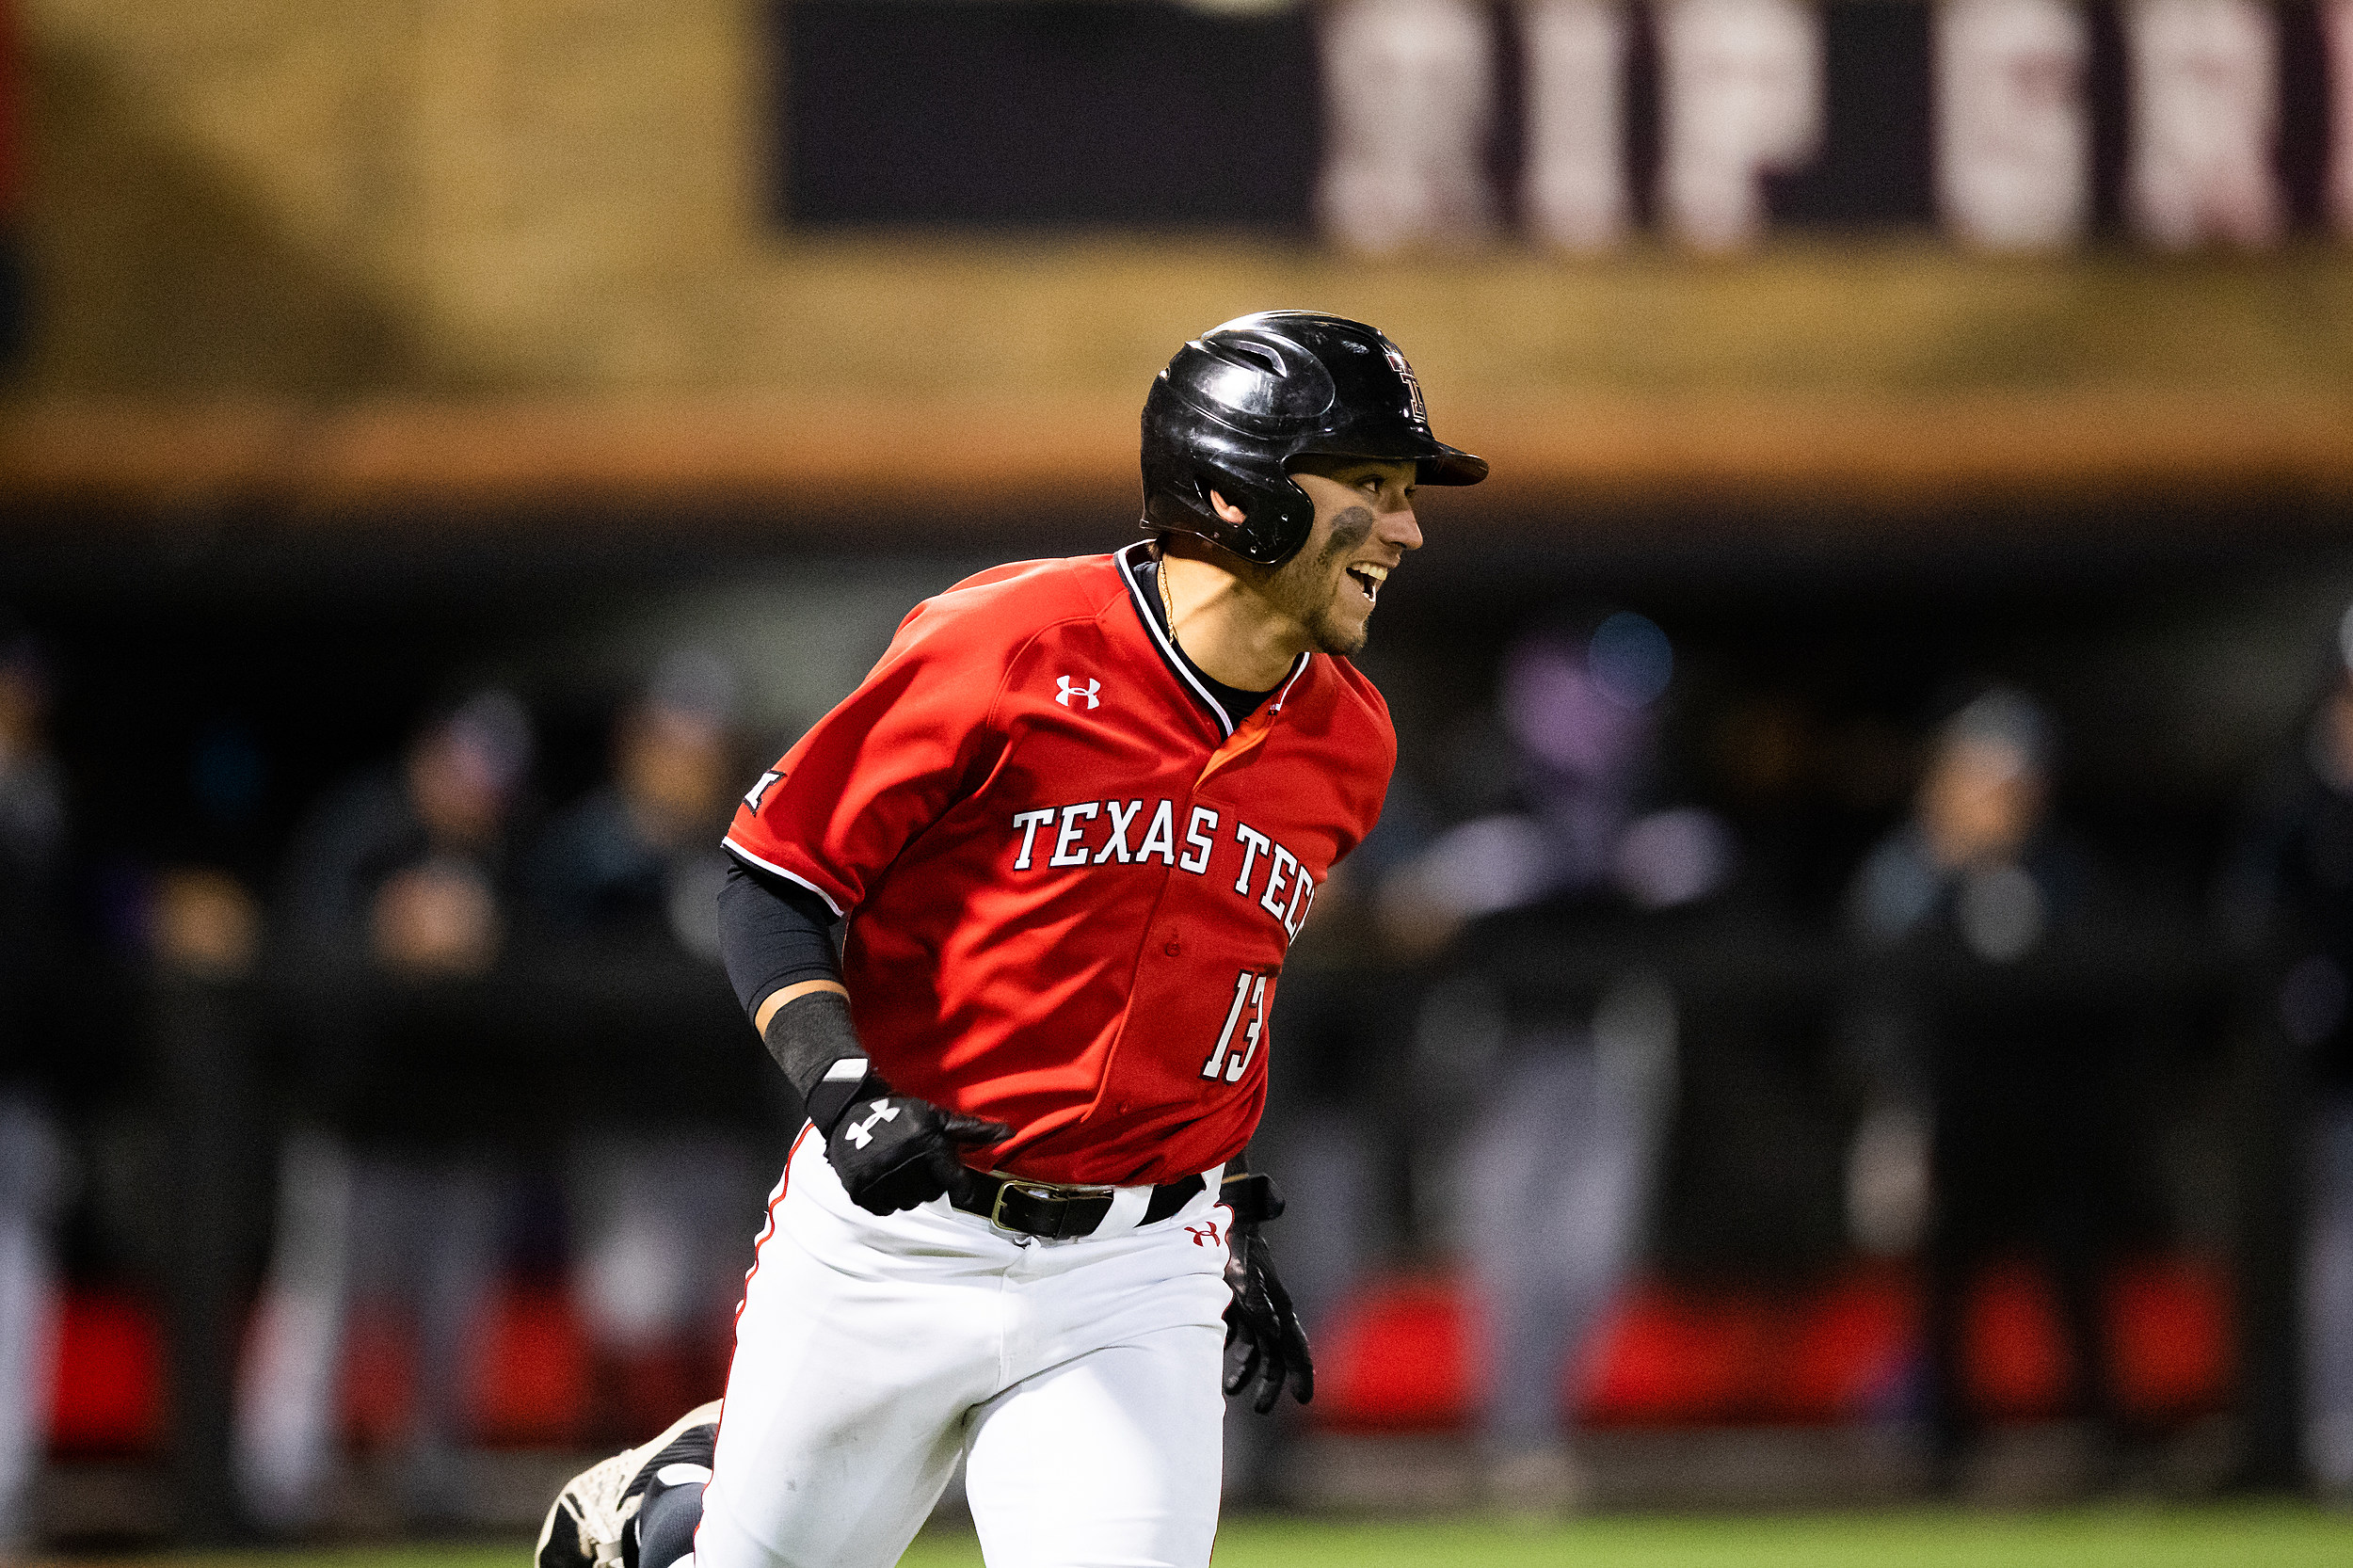 Texas Tech Baseball > Lonestar 99.5